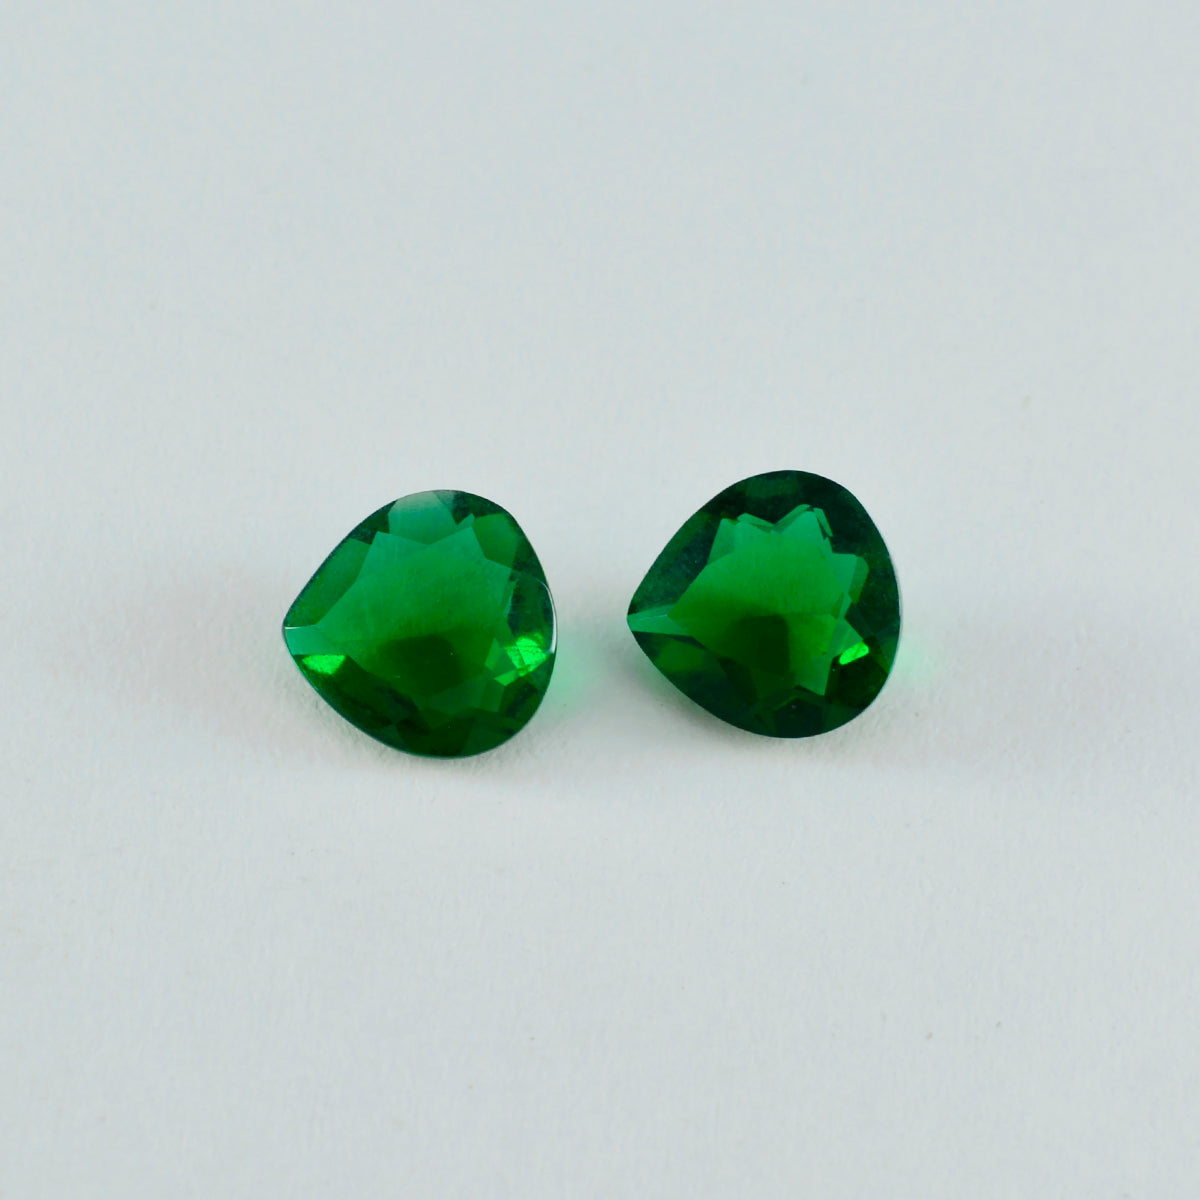 Riyogems 1 pieza Esmeralda verde CZ facetada 8x8mm forma de corazón piedra de calidad hermosa